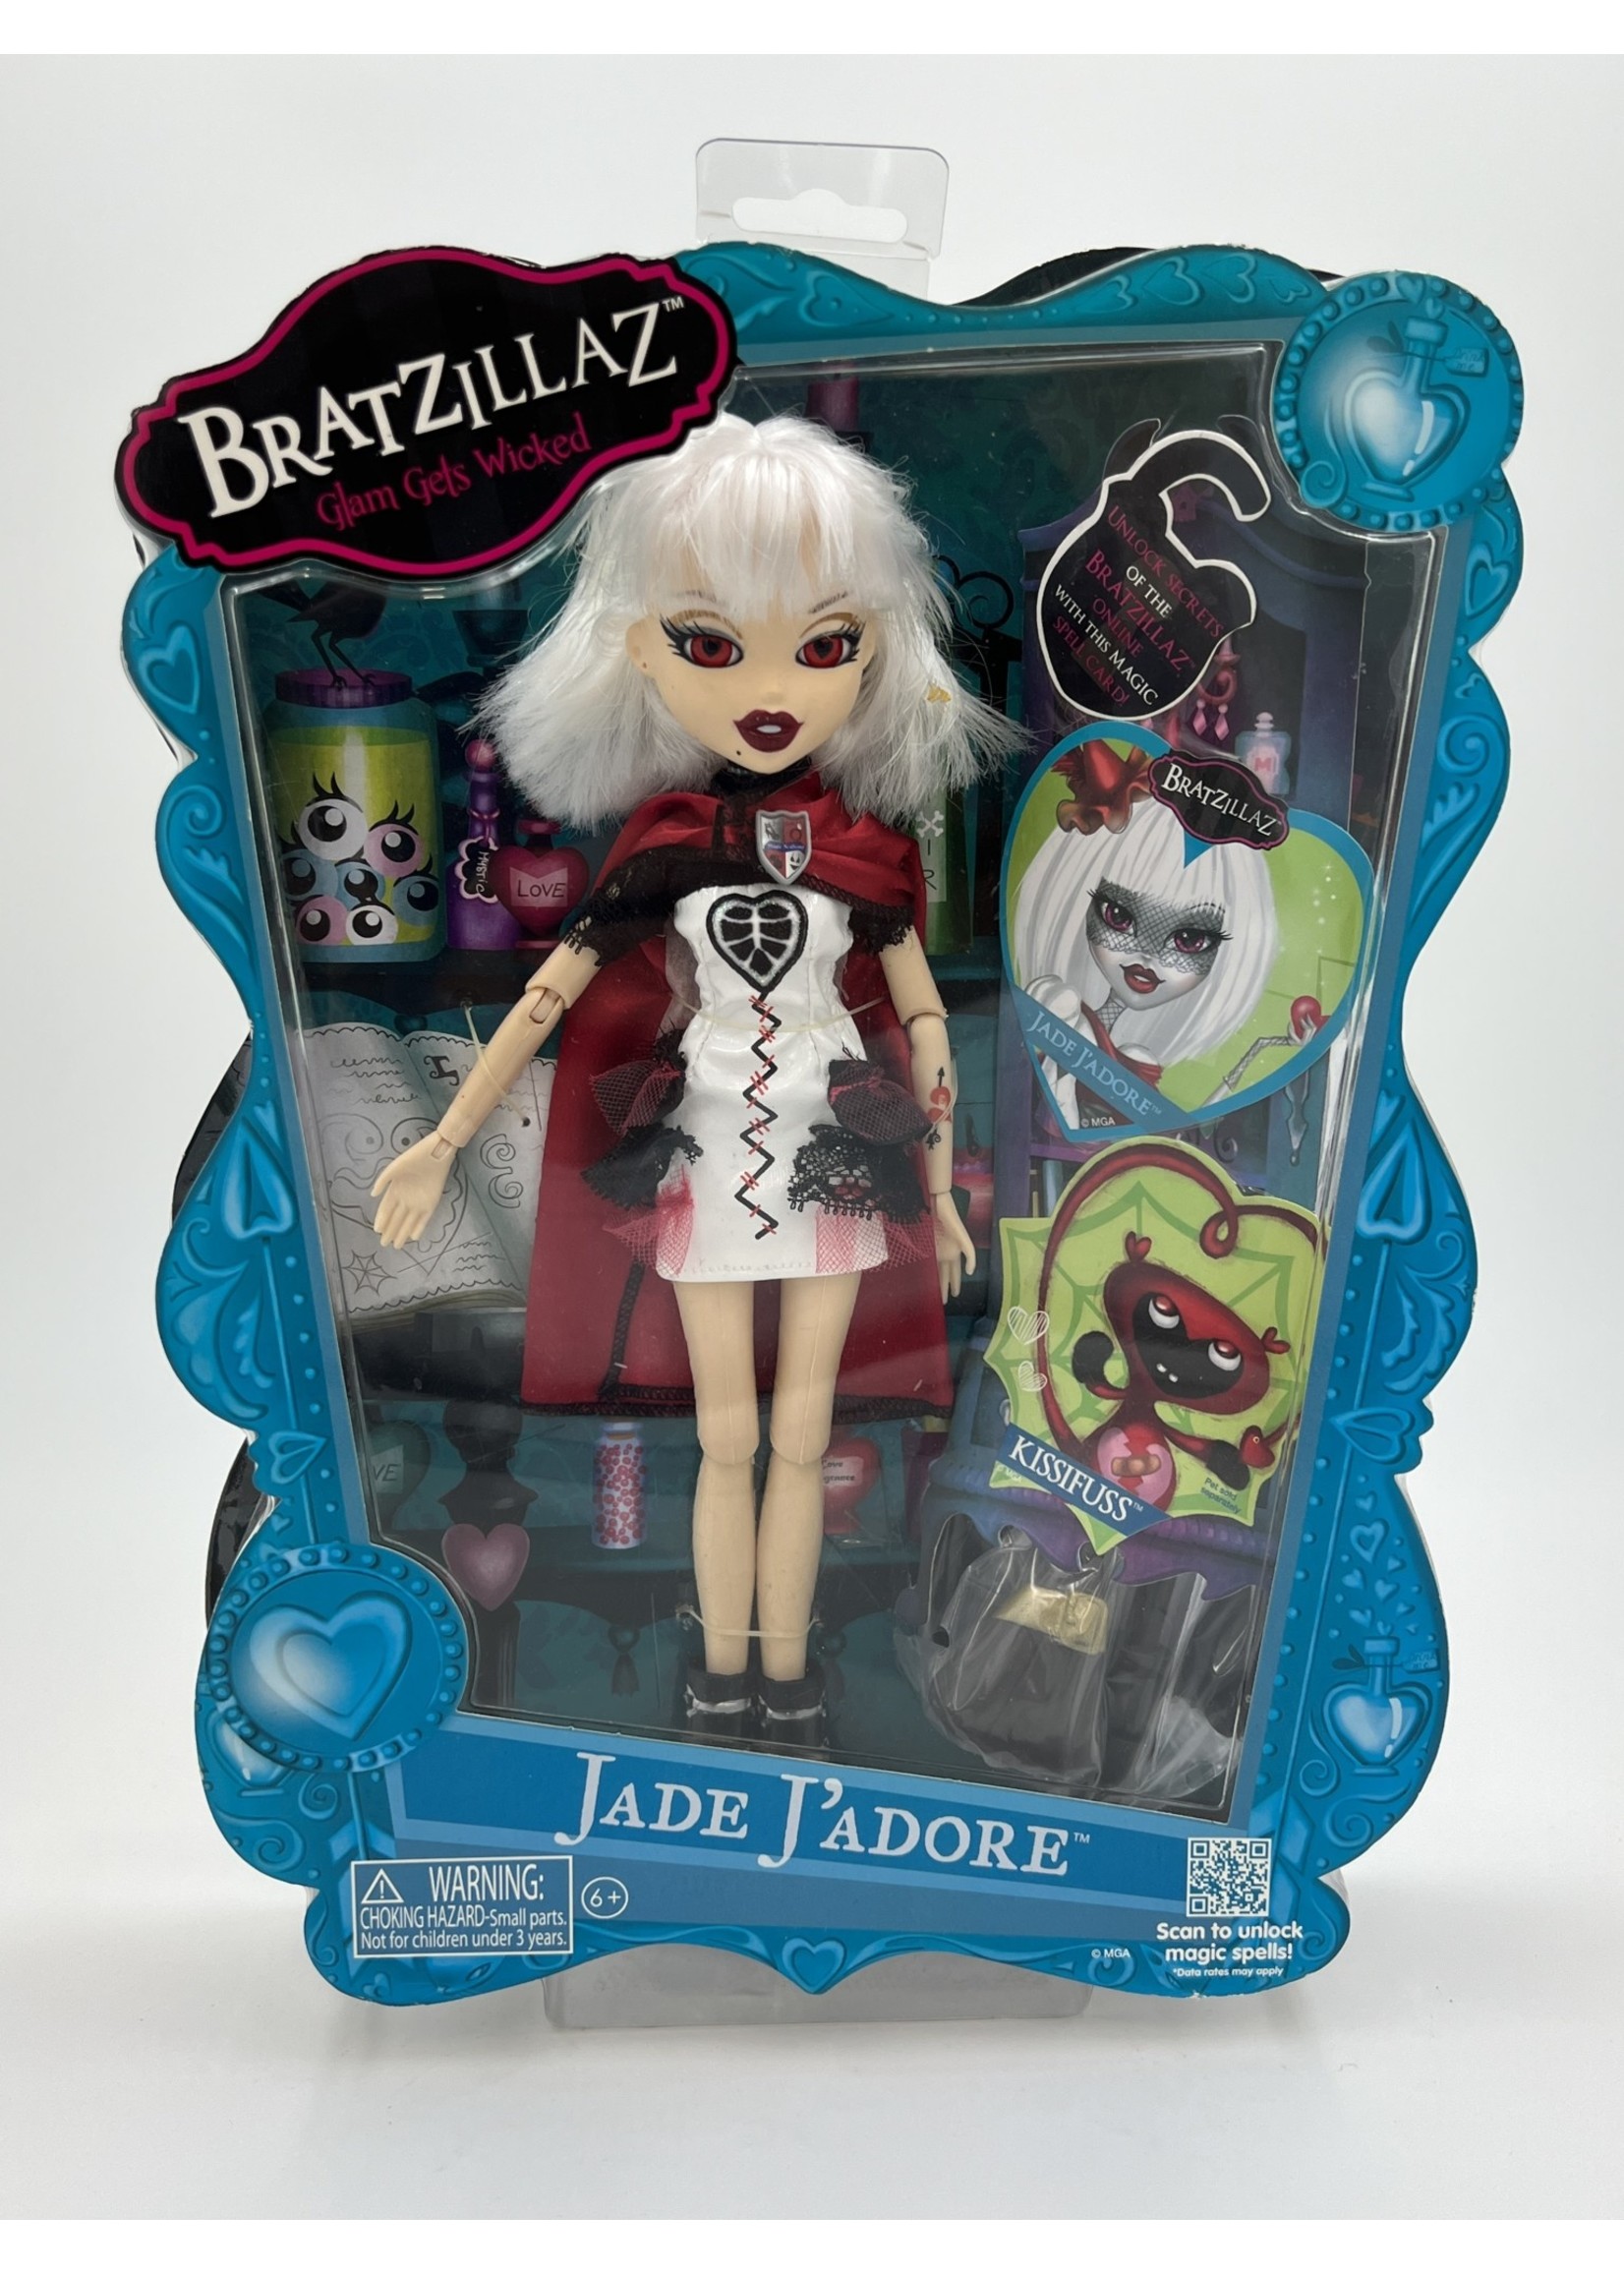 Jade Jadore Bratzillaz Action Figure - This N That